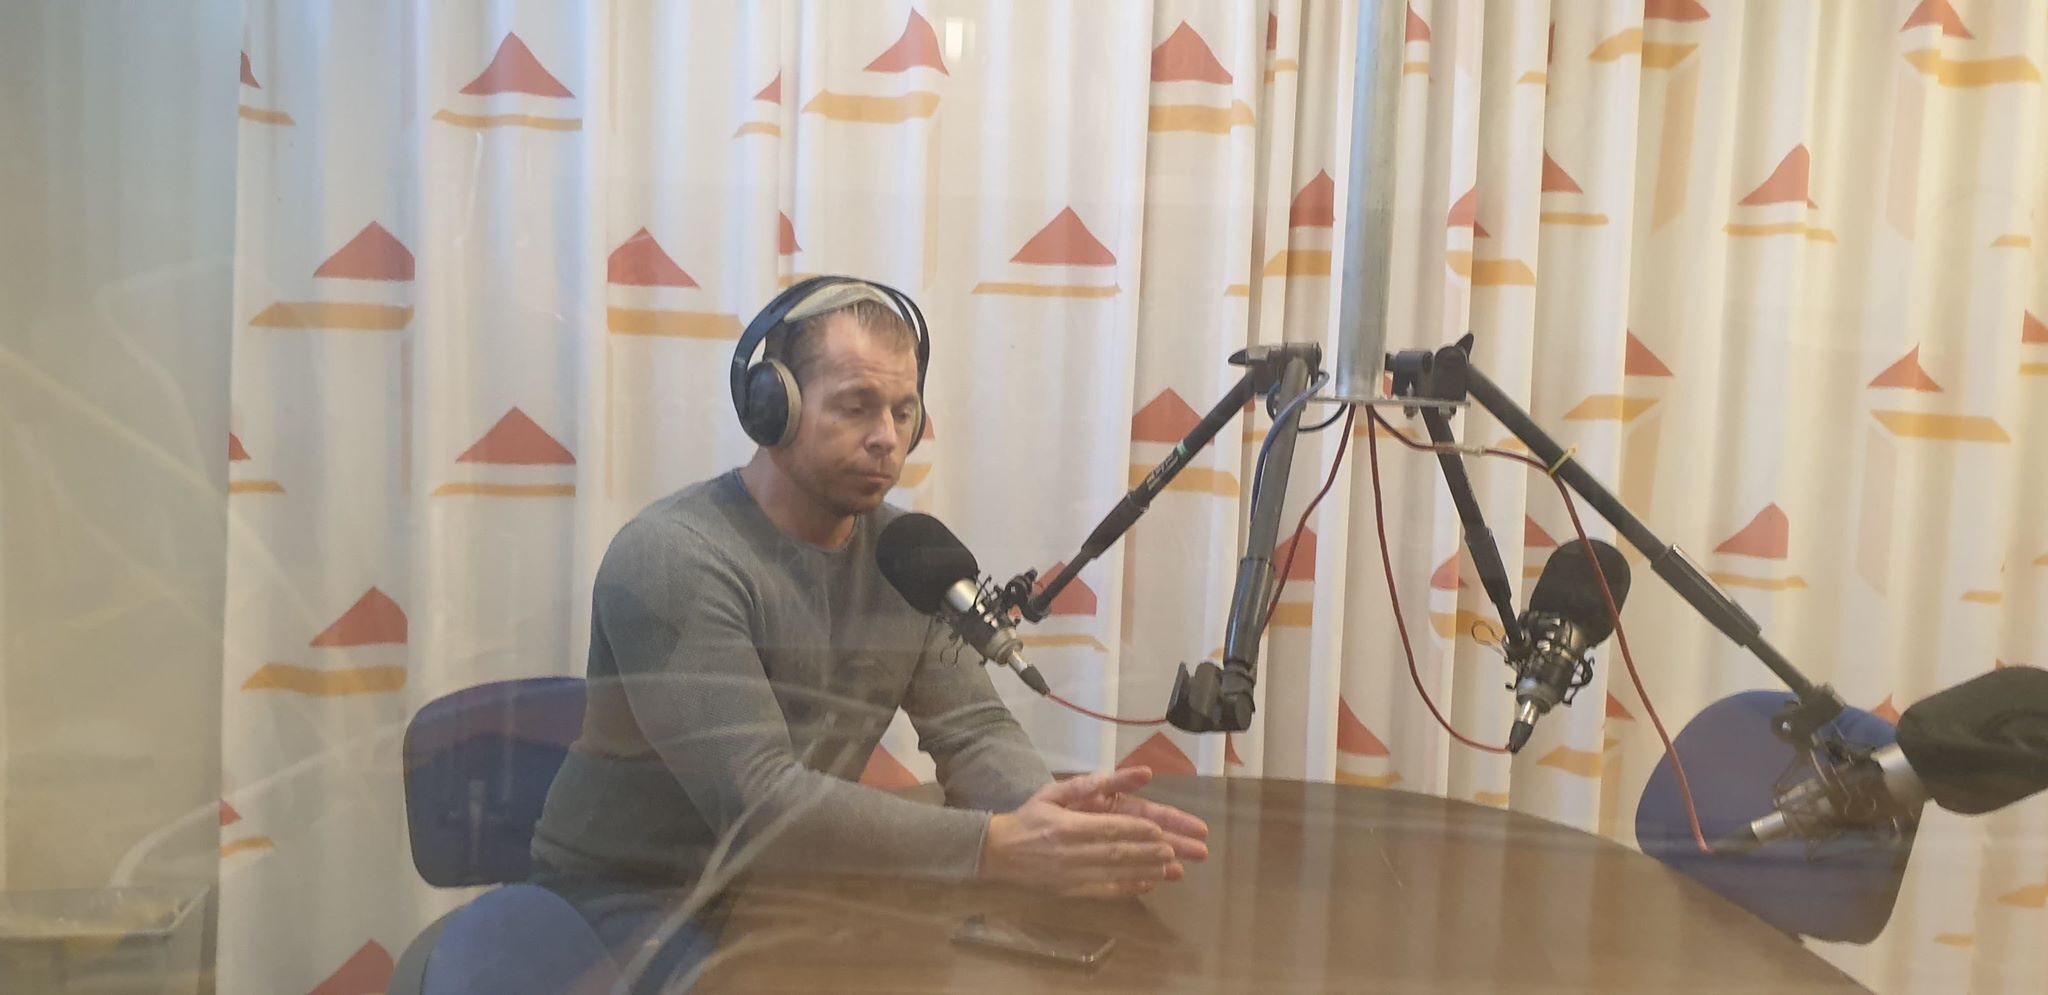 fra Korsør virksomheden Green ghost gæstede Nærradio Korsør fortalte om virksomheden og hvordan fiskenet blandt andet genanvendes til sportstøj - hør podcasten her